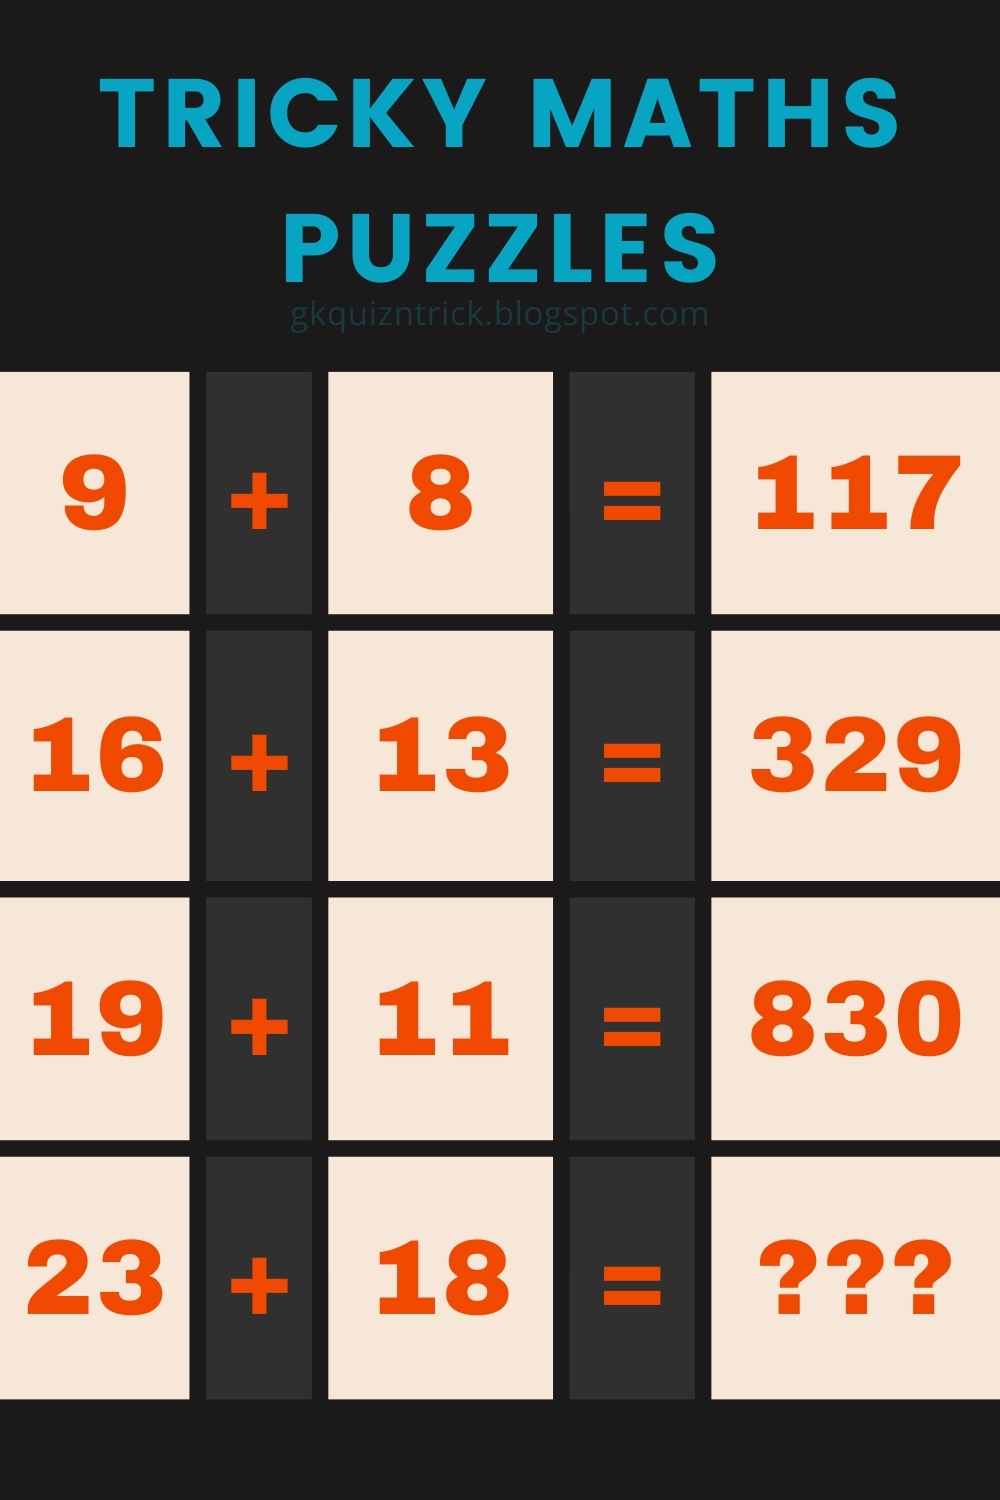 Viral Maths Puzzles 9 + 8 = 117, 16 + 13 = 329, 19 + 11 = 830, 23 + 18 = ?